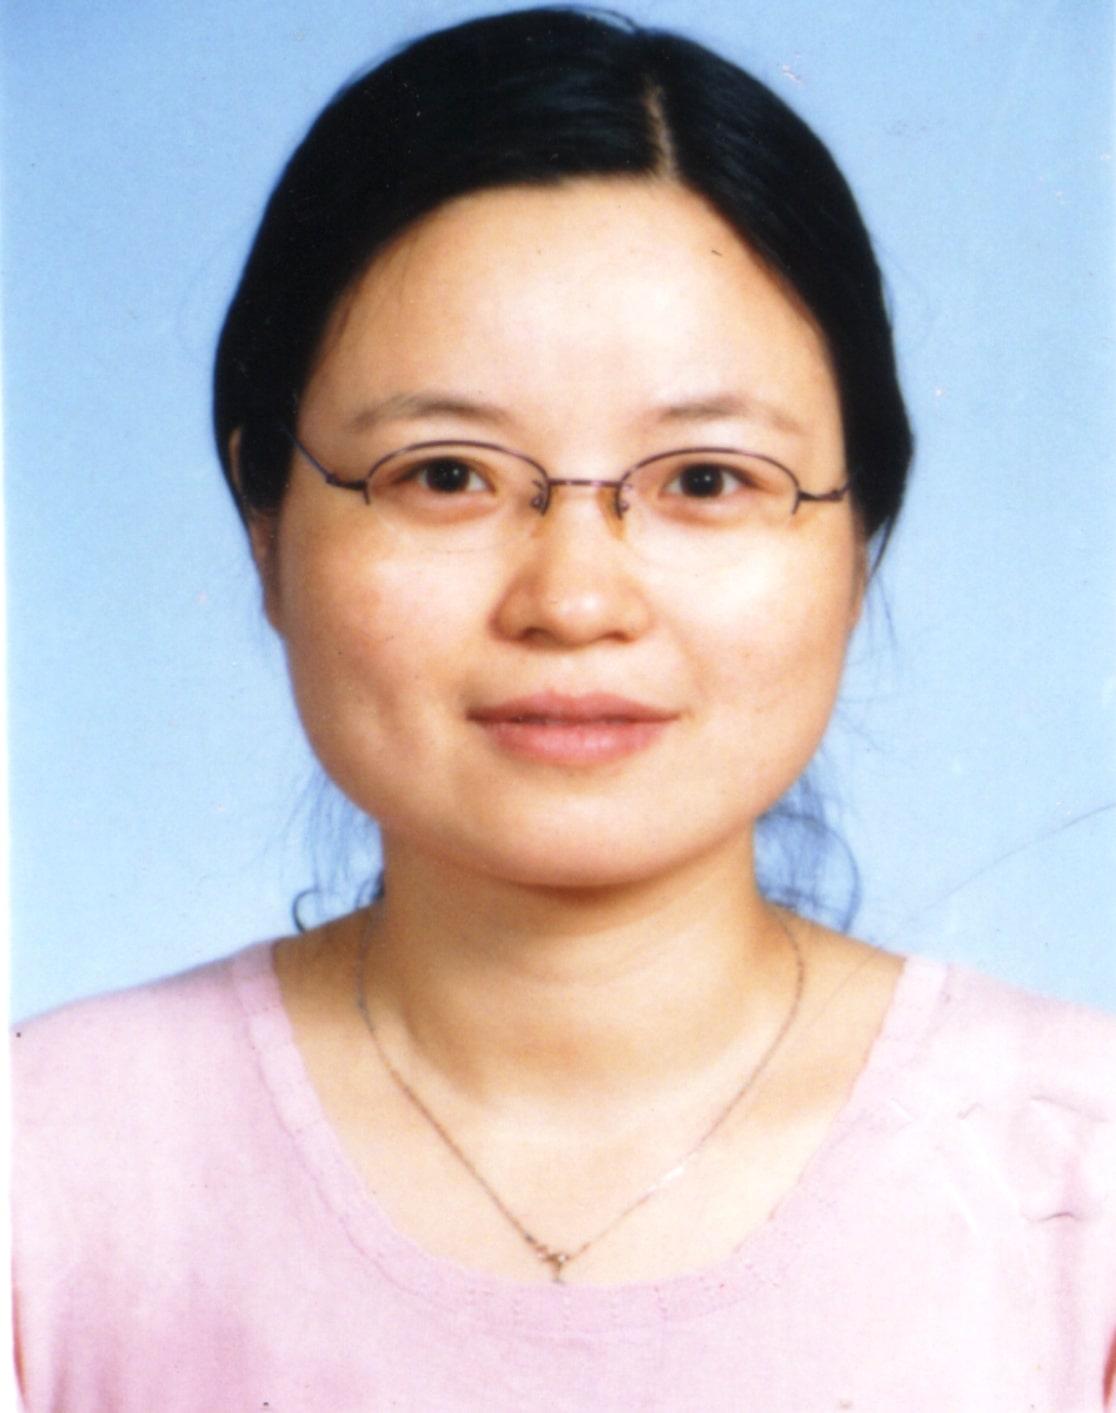 Dr. Xueping Zhu